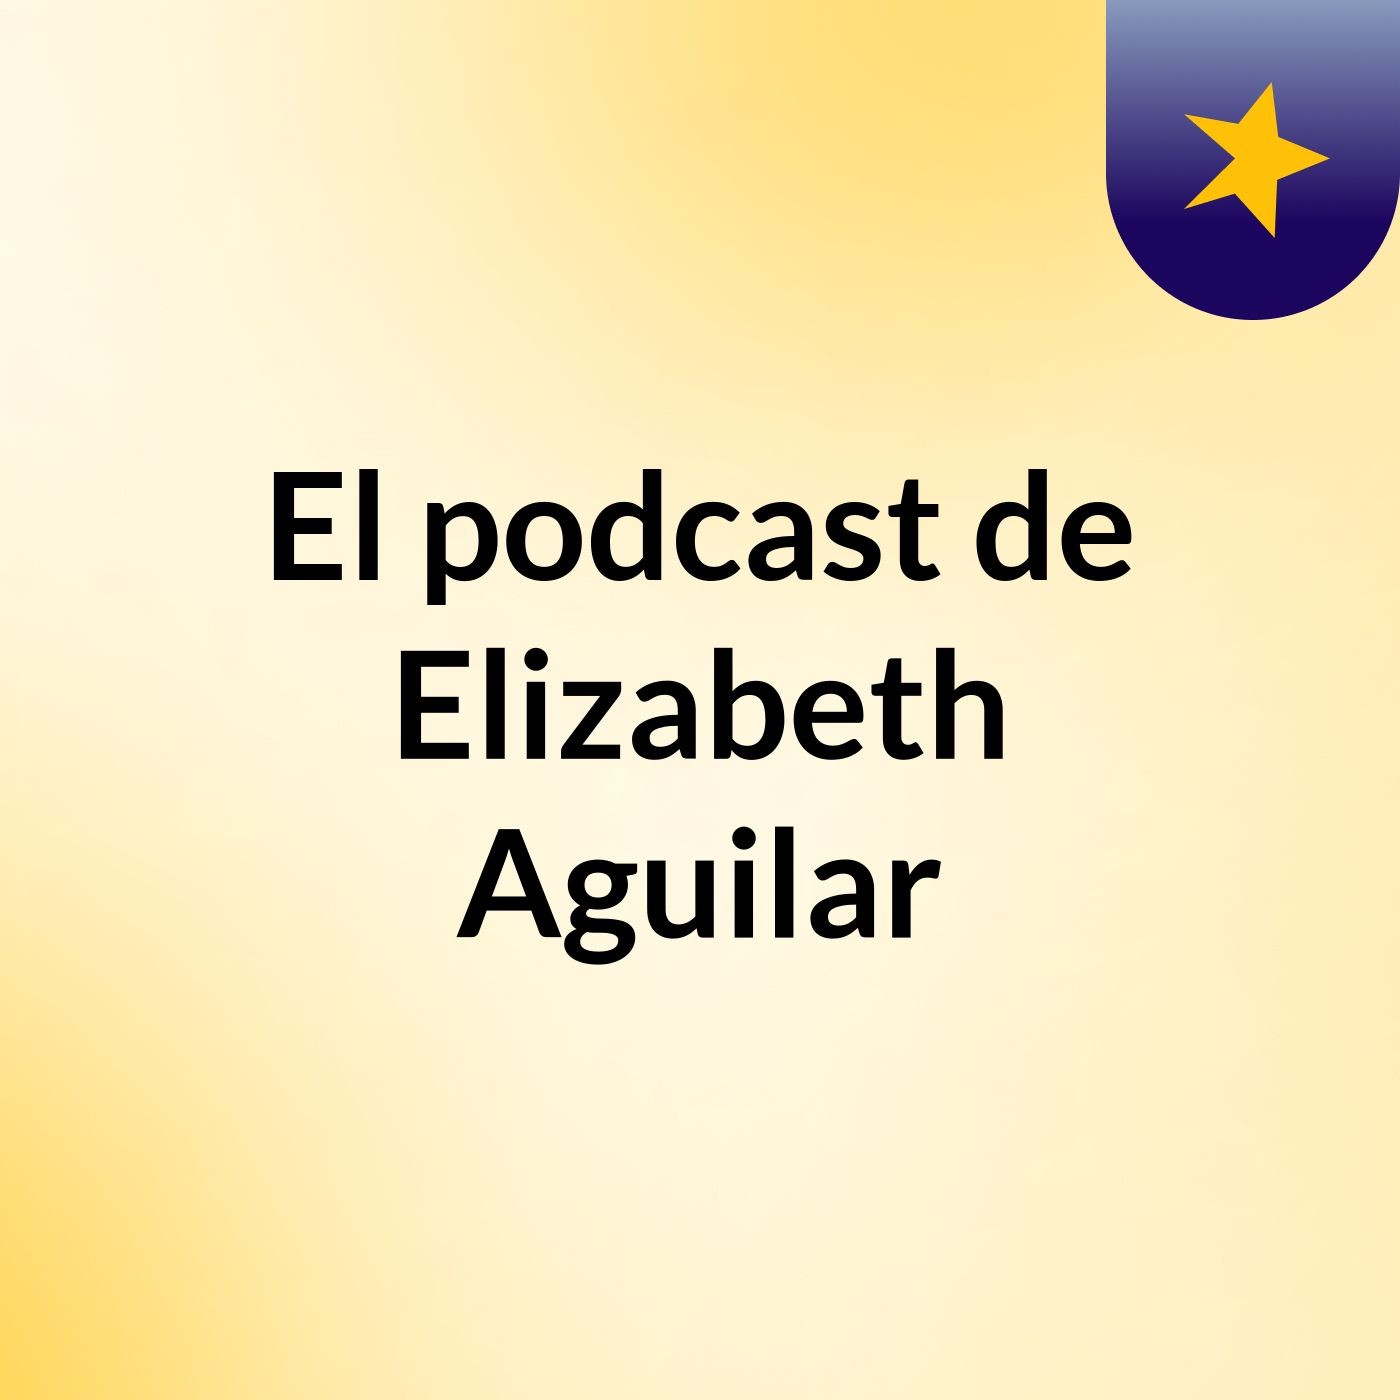 El podcast de Elizabeth Aguilar